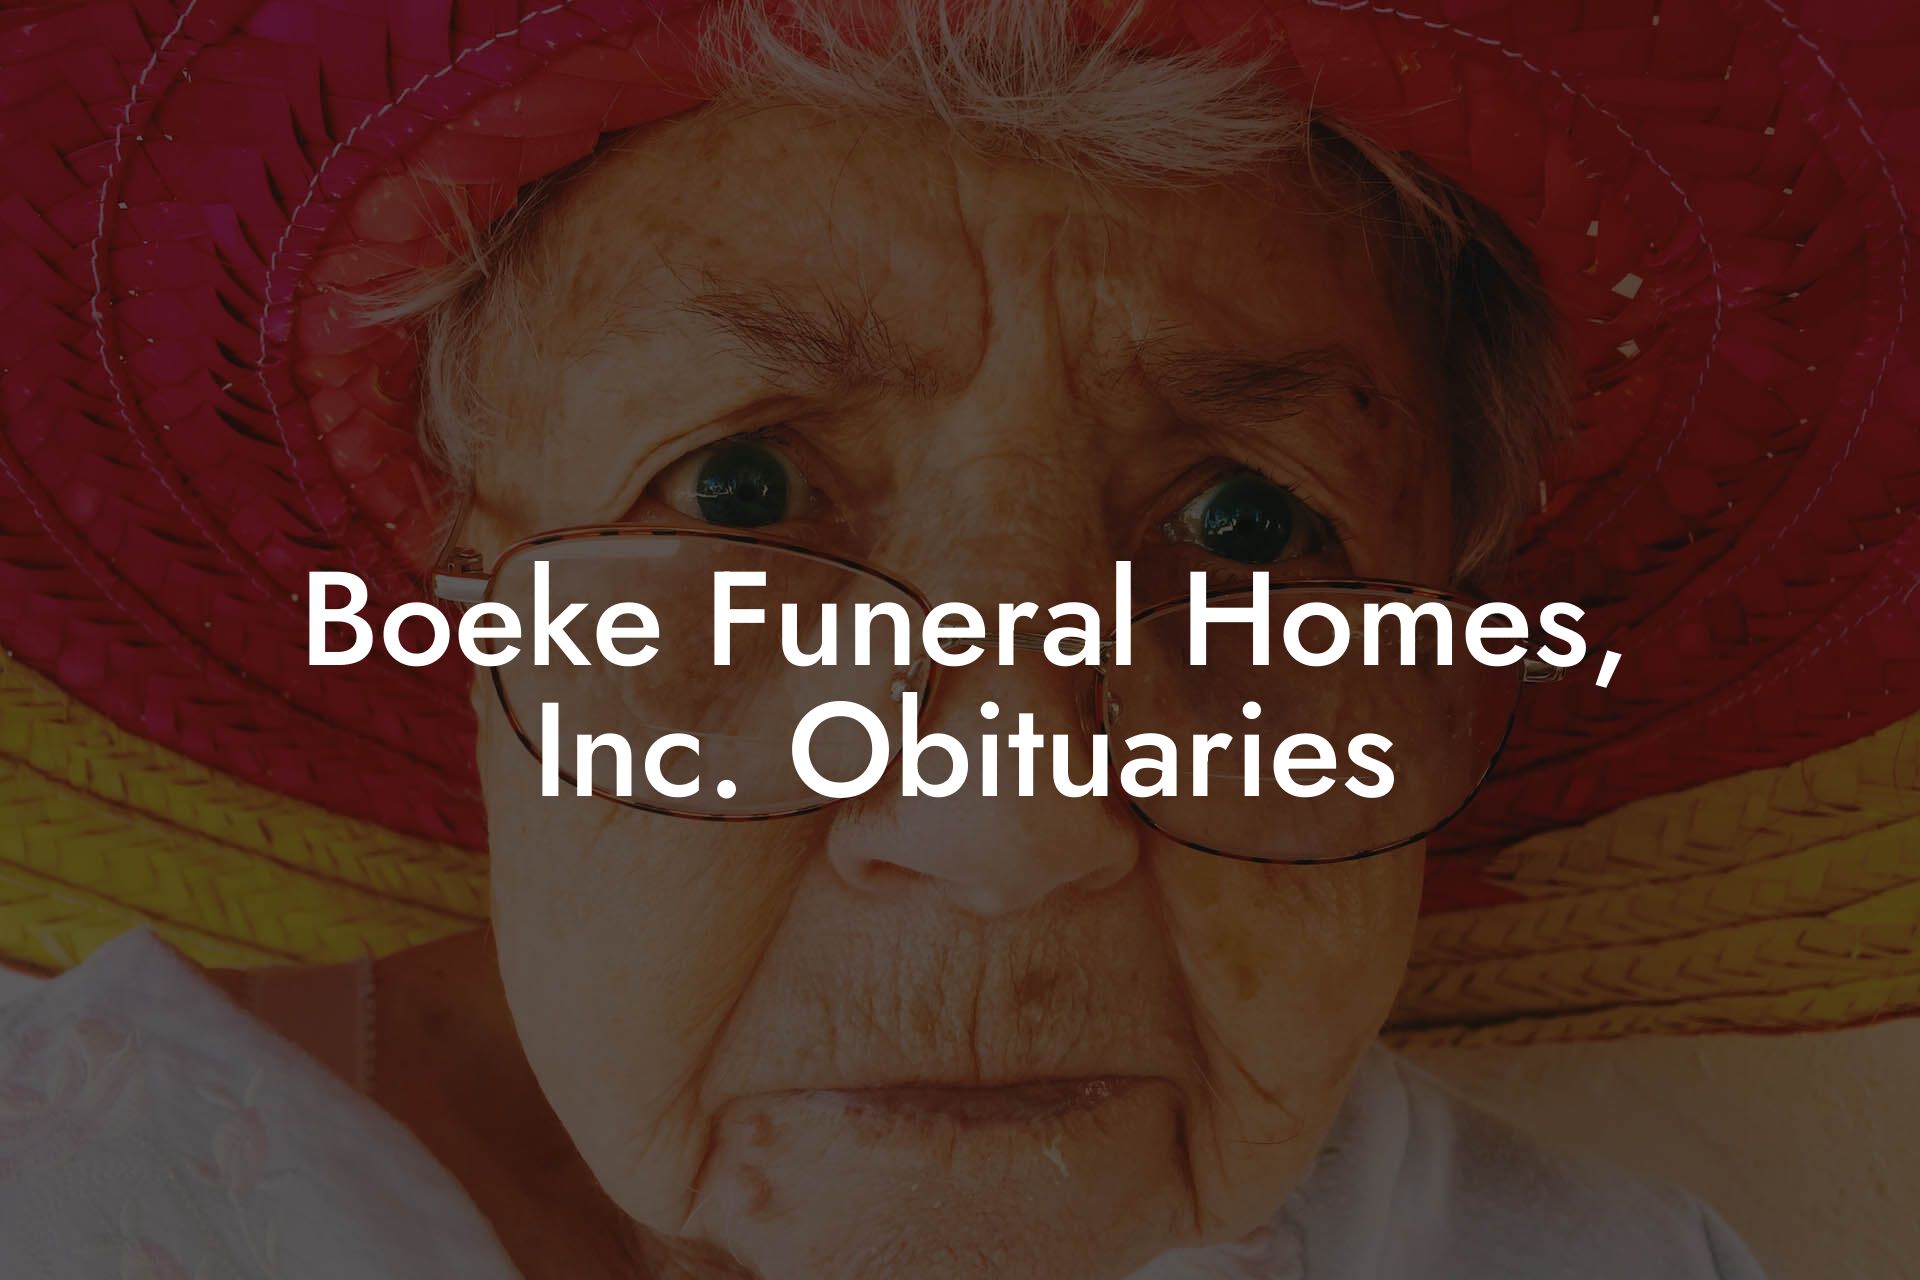 Boeke Funeral Homes, Inc. Obituaries